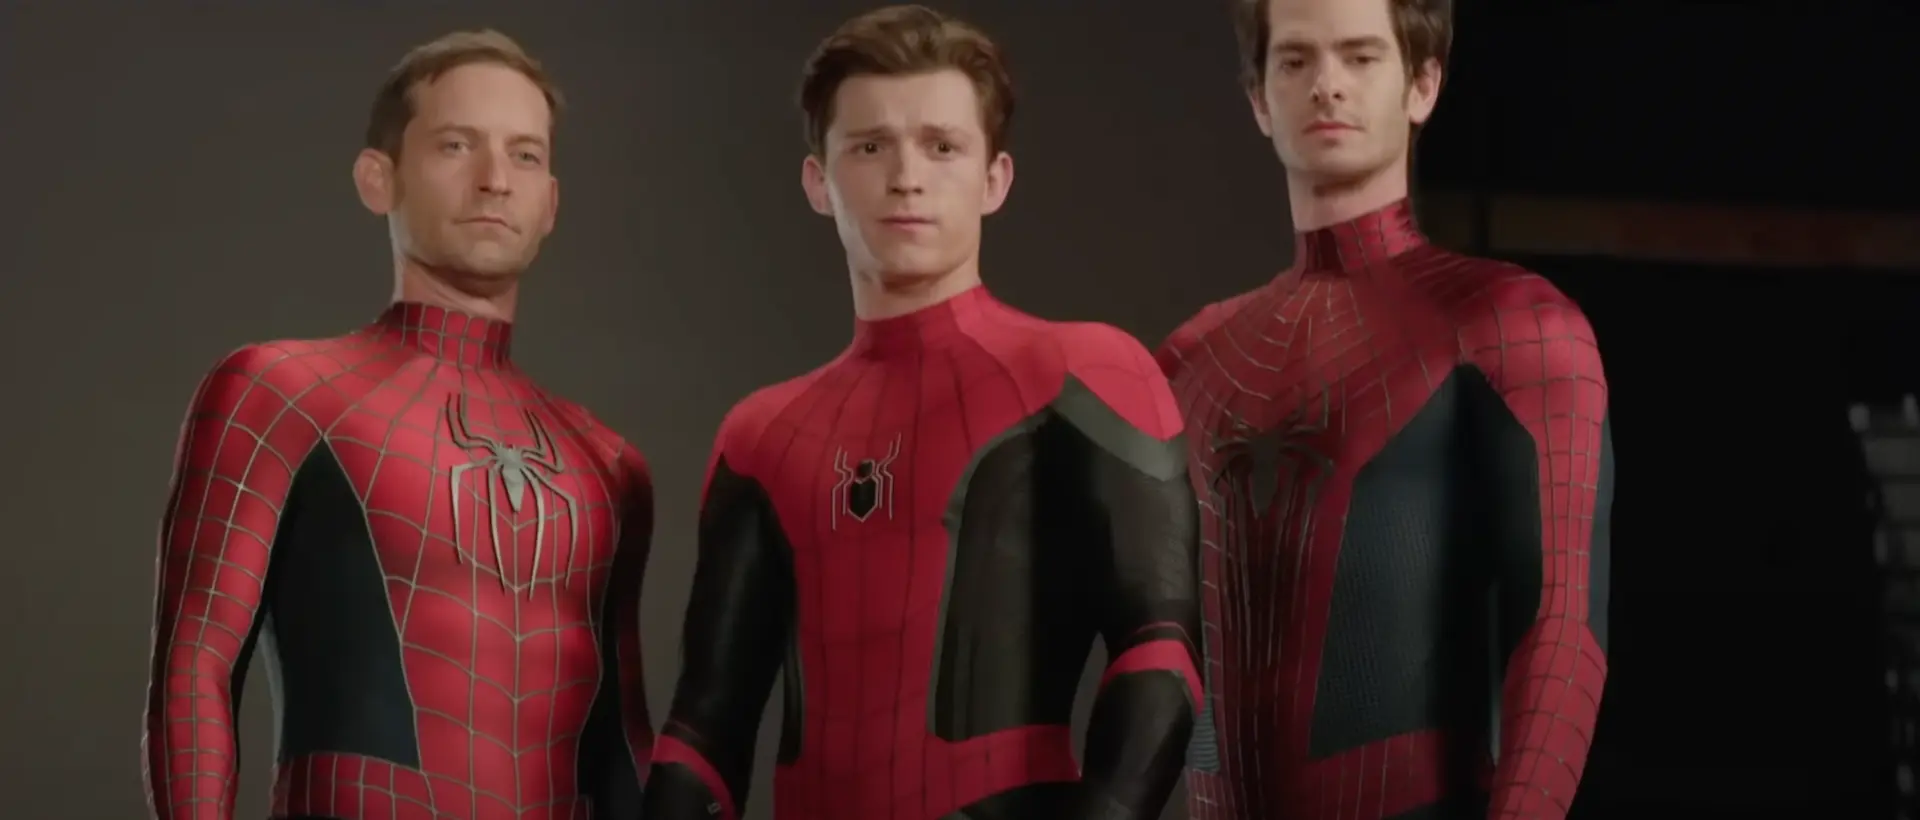 Del streaming vuelve al cine Spider-Man 3: No Way Home con 15 minutos extra